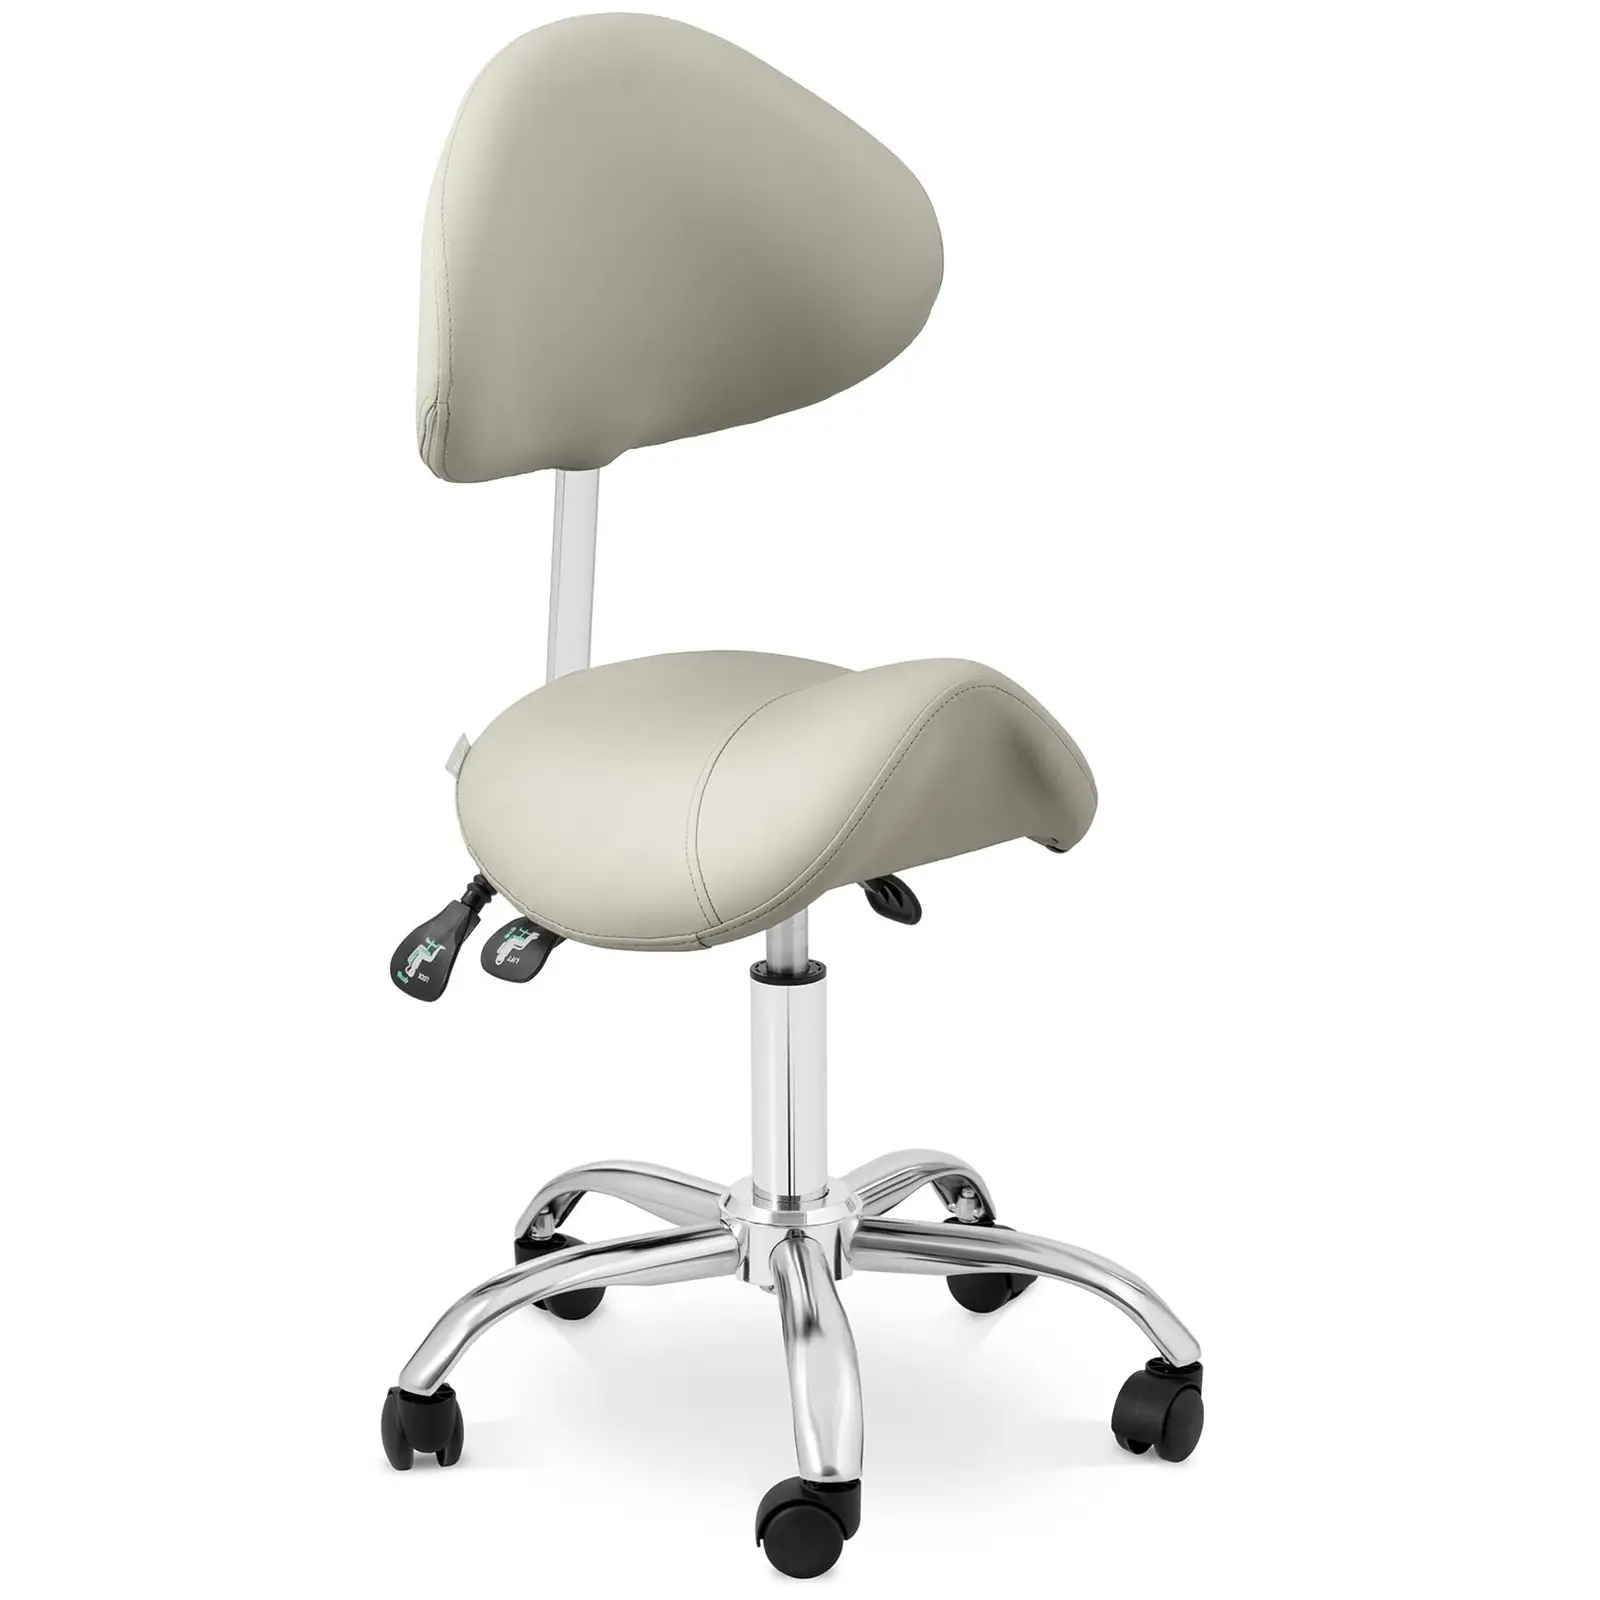 Zadel stoel - In hoogte verstelbare rugleuning en zitting - 55-69 cm - 150 kg - Grijs, Zilver